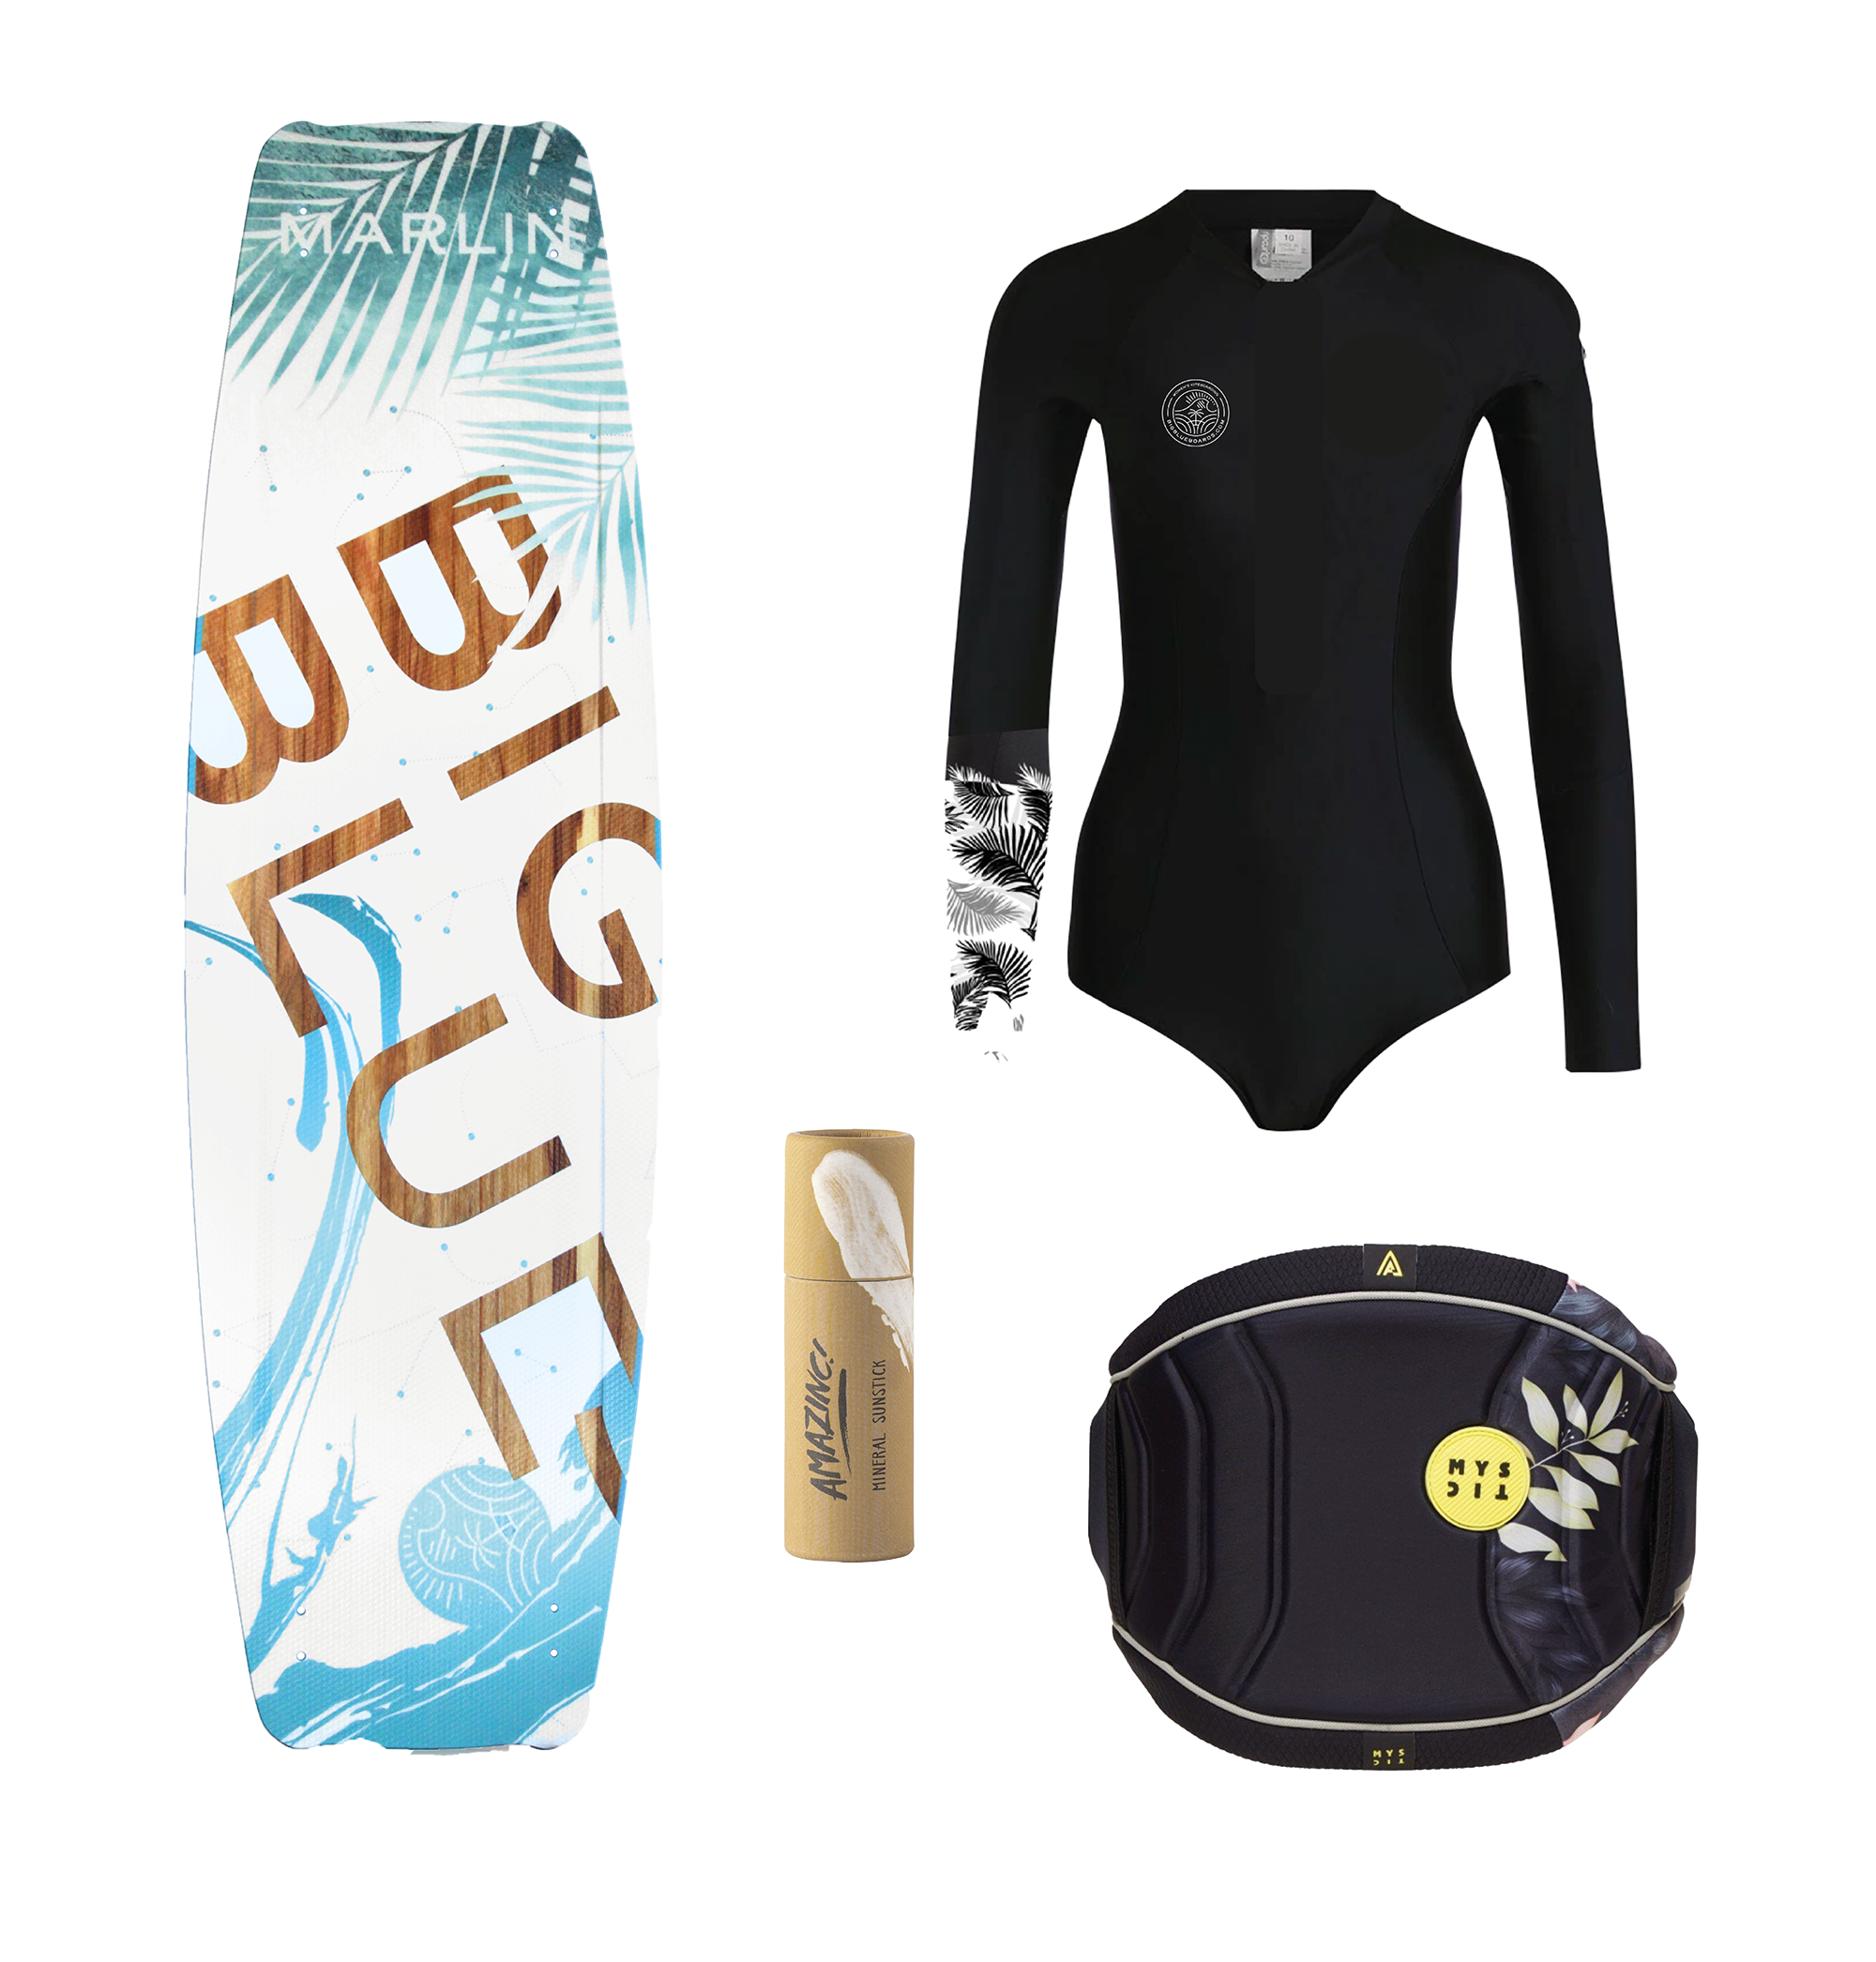 BIG BLUE Summer Package | Kite Board + Harness + Lycra + Sunblock